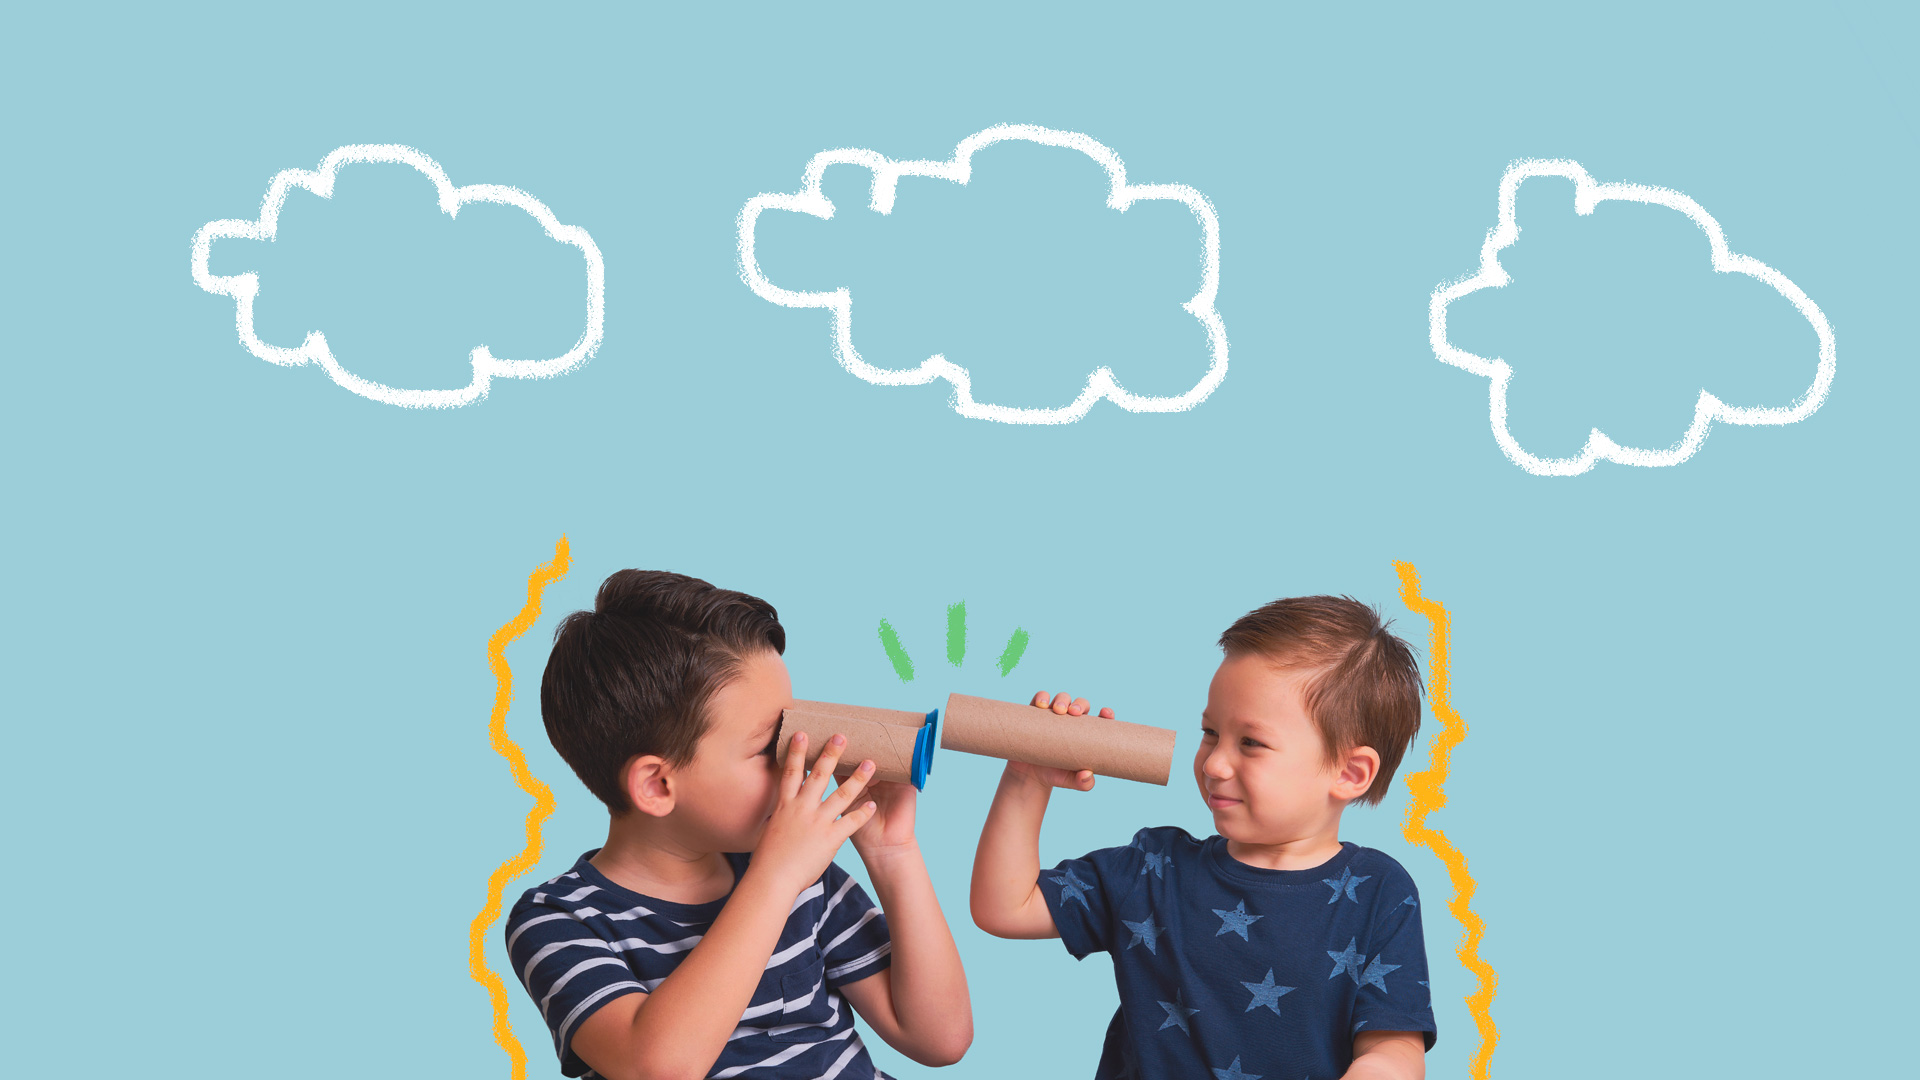 Dois meninos se olham através de binóculos feitos com rolos de papel higiênico customizados. O mais velho usa camiseta listrada e o mais novo camiseta com estampa de estrelas, ambas na cor azul marinho. Acima deles, num fundo azul, está desenhado o contorno de nuvens.